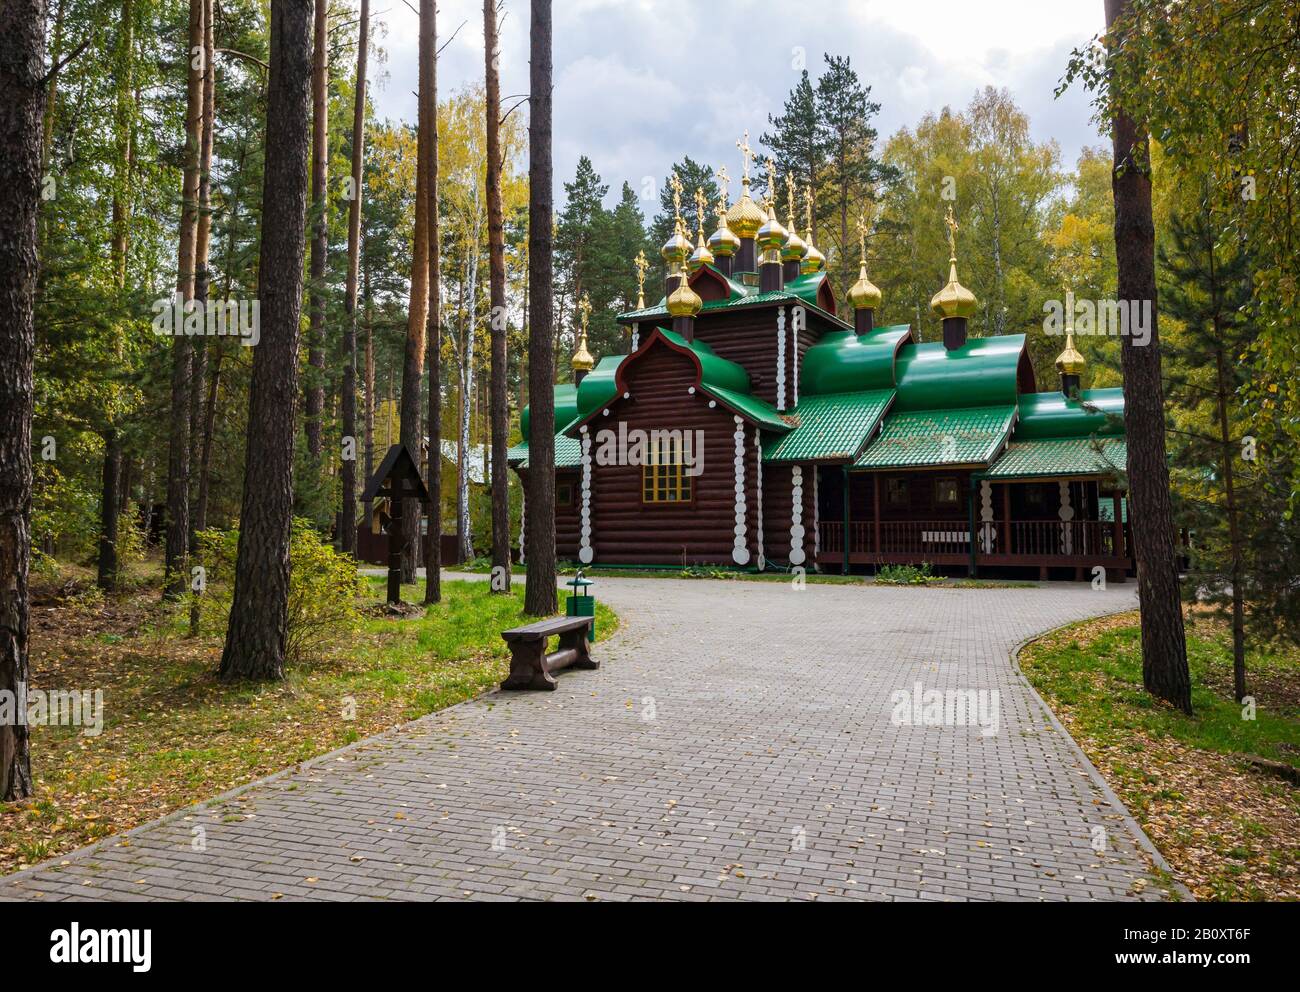 Holzkapelle in Wald, Ganina Yama, Kloster der Heiligen Kaiserlichen Passionsträger, Sibirien, Russische Föderation Stockfoto